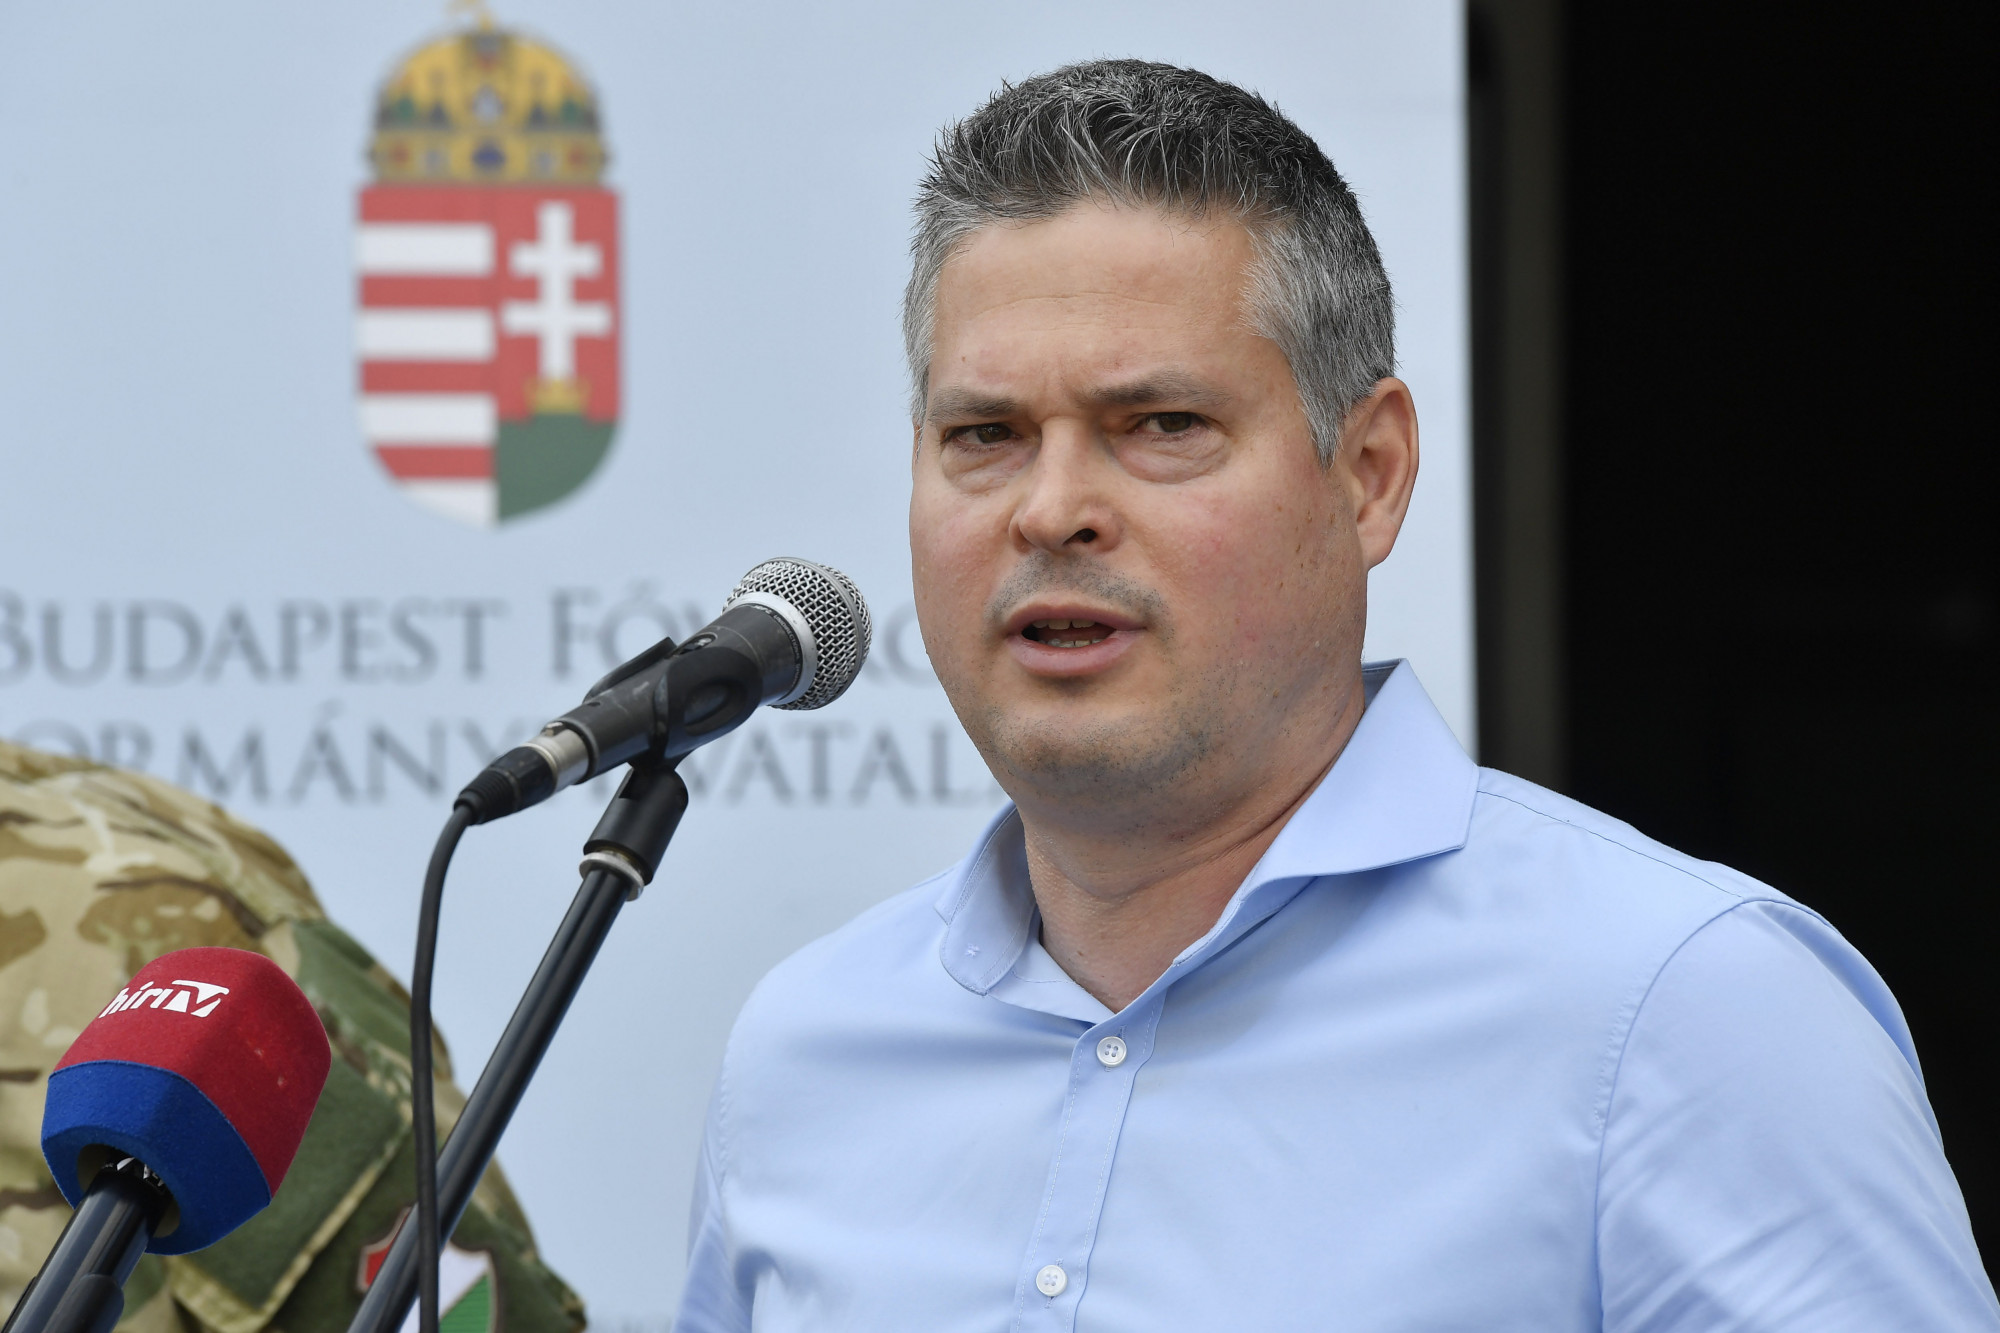 Sára Botond lett a Fidesz józsefvárosi polgármesterjelöltje